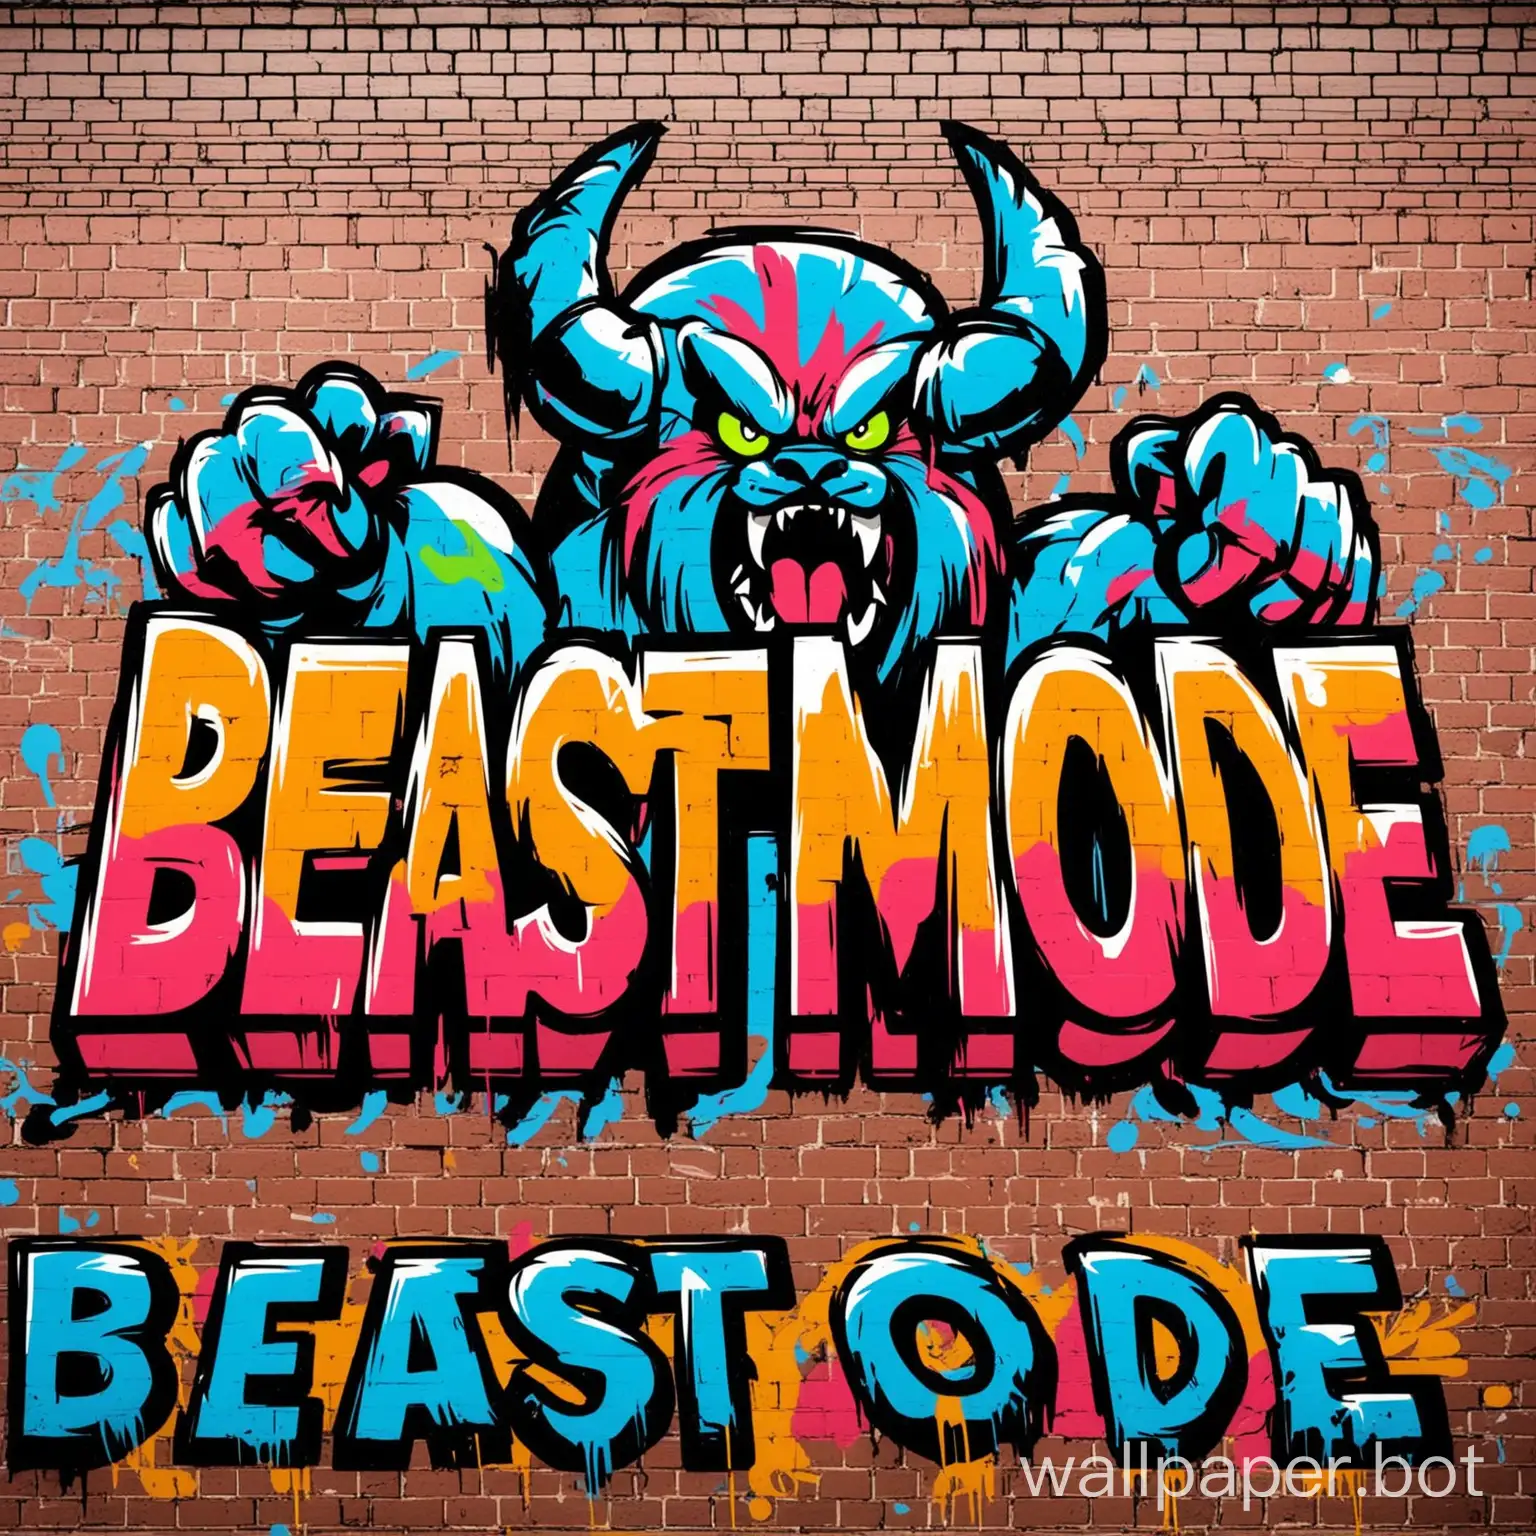 Graffiti-Art-Vibrant-Beast-Mode-Mural-on-Urban-Brick-Wall